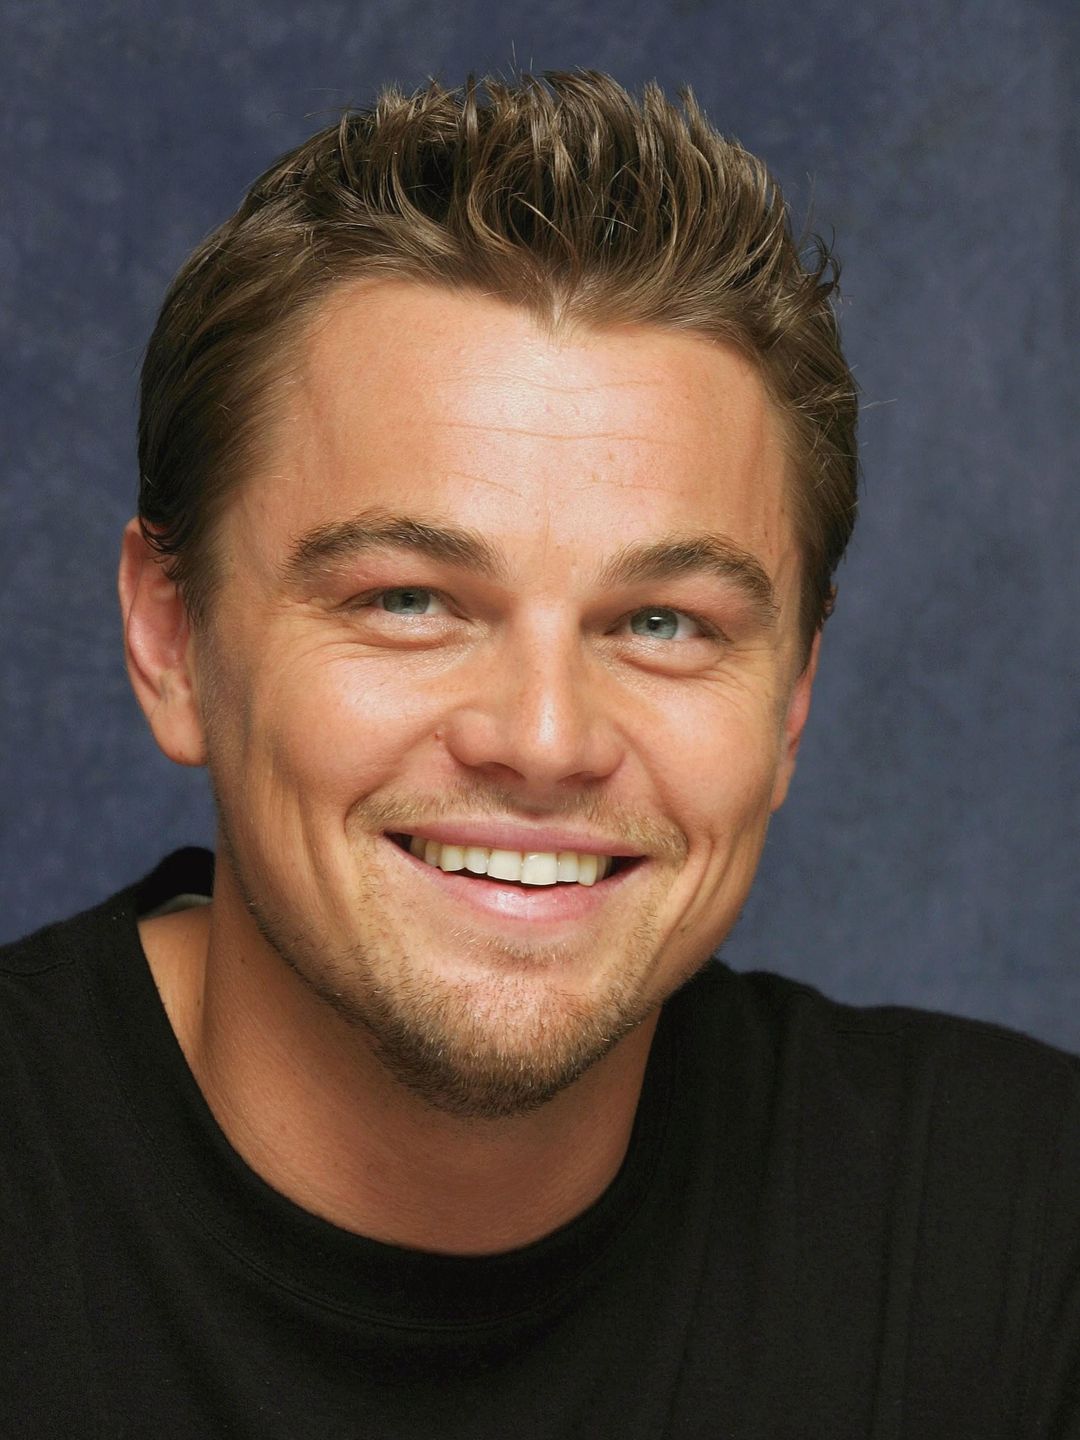 Leonardo DiCaprio young age